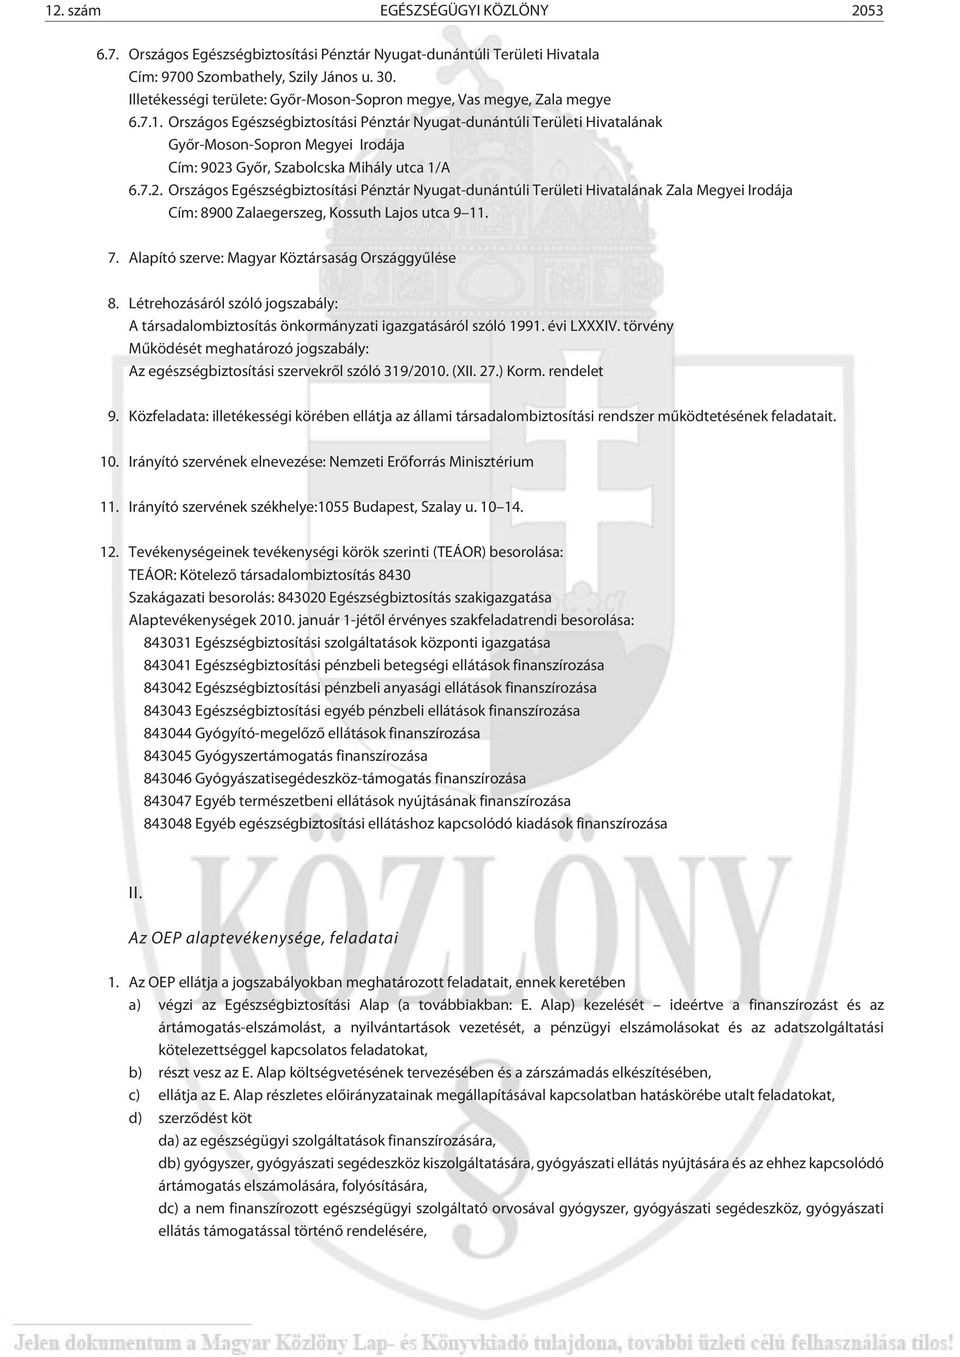 Országos Egészségbiztosítási Pénztár Nyugat-dunántúli Területi Hivatalának Gyõr-Moson-Sopron Megyei Irodája Cím: 9023